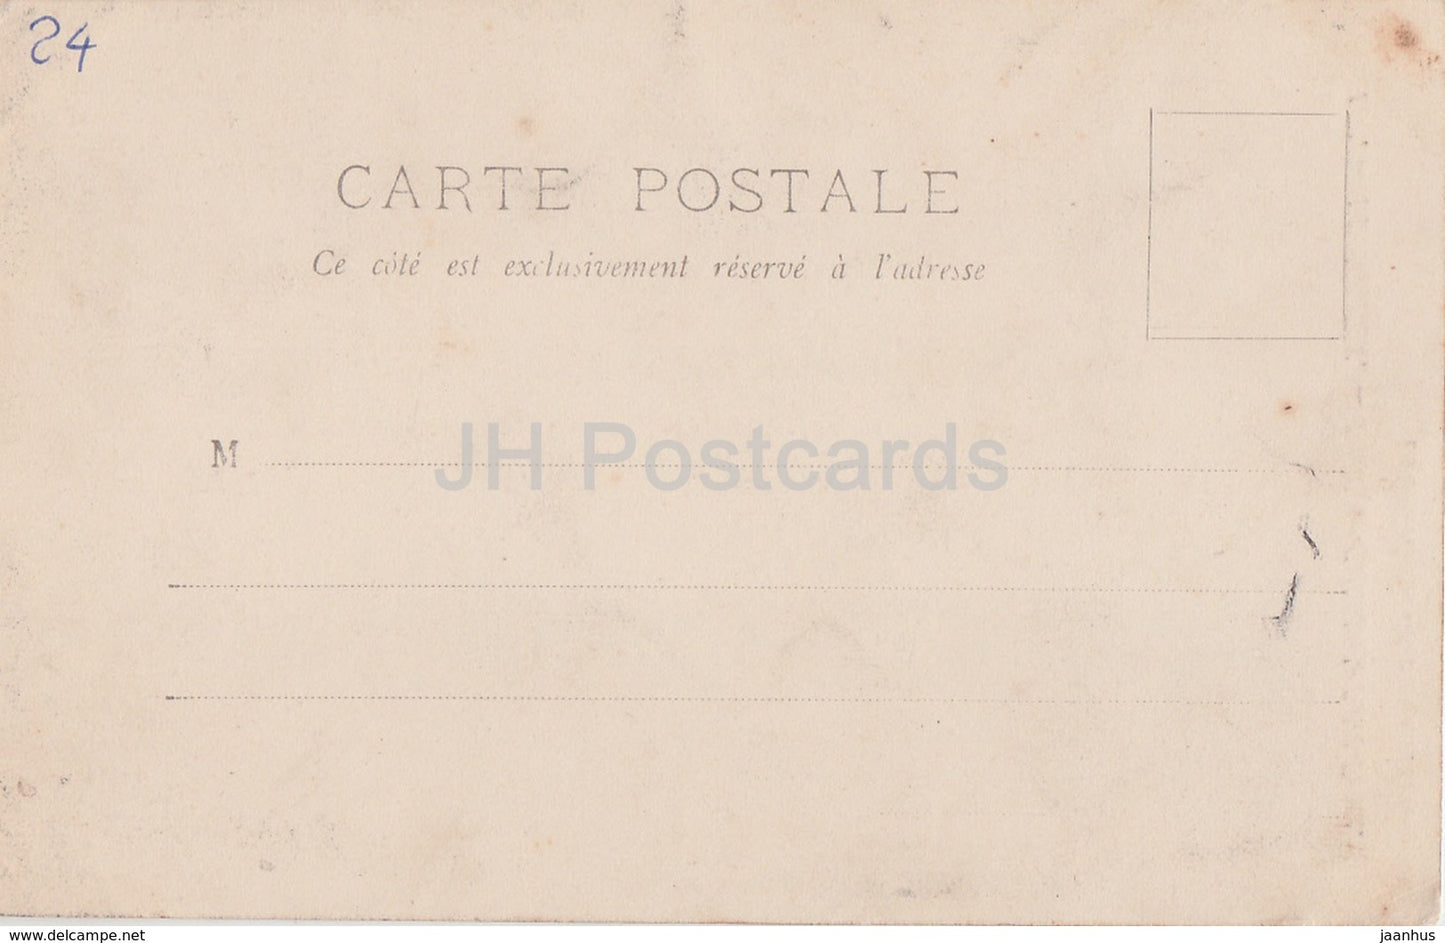 Périgueux - Basilique Cathédrale Saint Front - cathédrale - 508 - carte postale ancienne - France - inutilisée